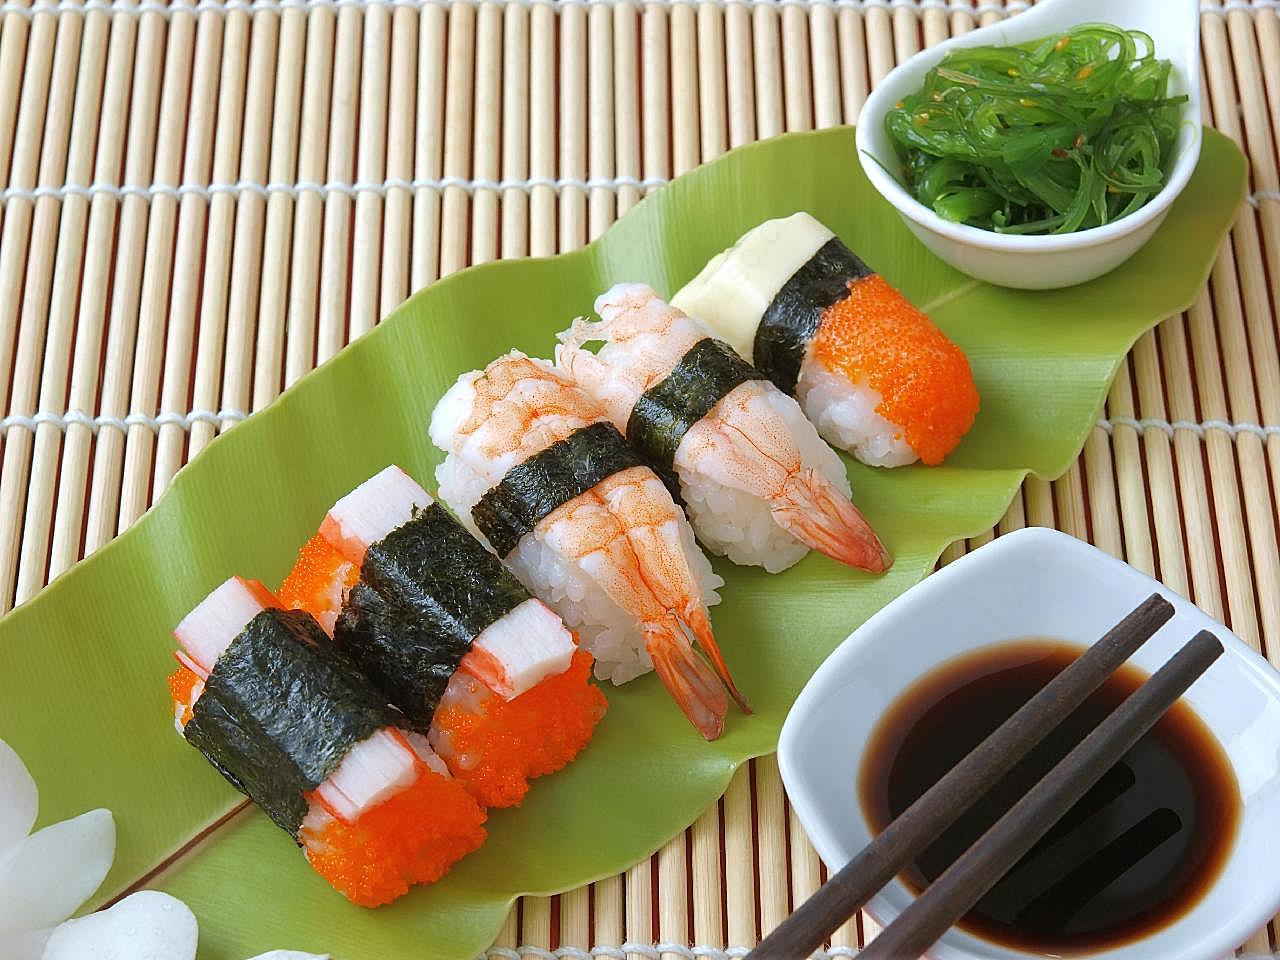 寿司的图片素材美食摄影